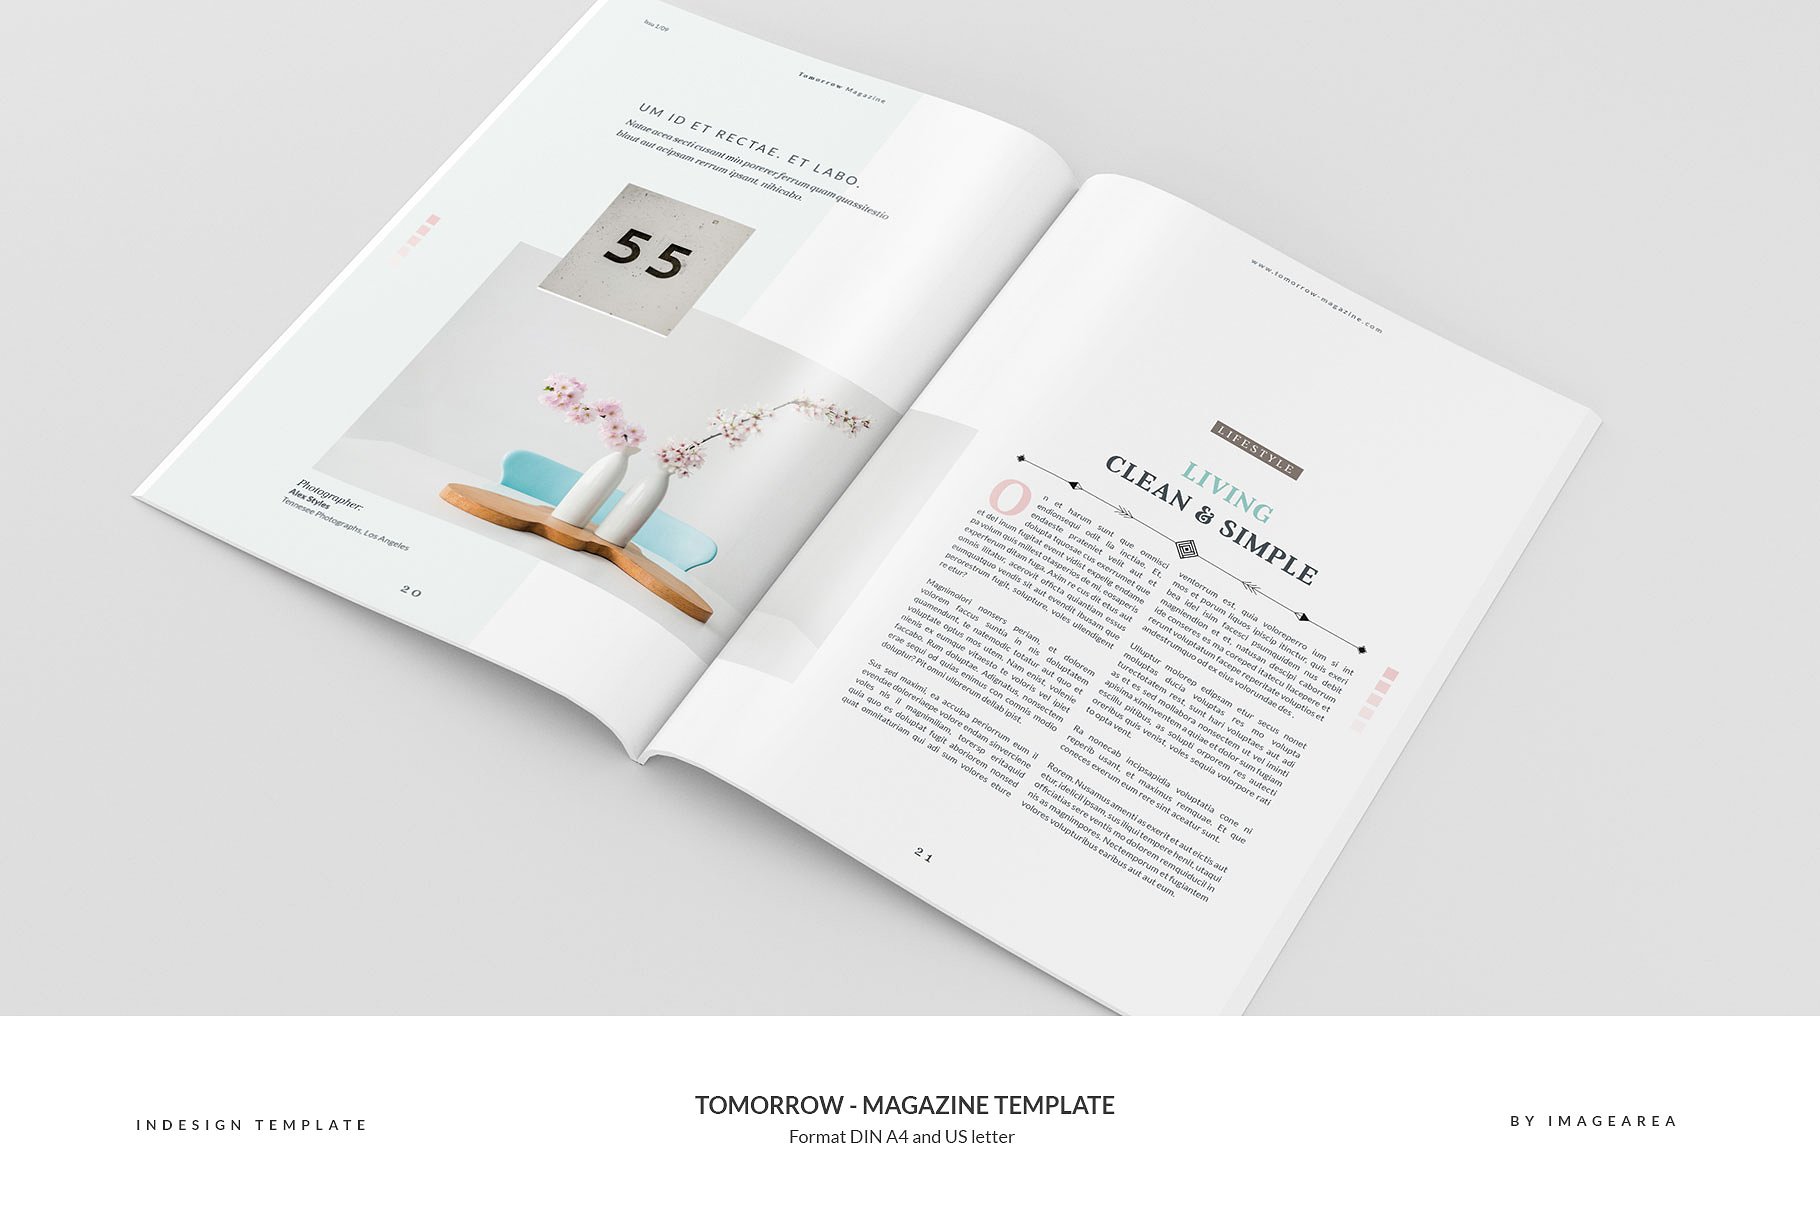 图文并茂排版优秀的专业杂志模板 Tomorrow – Magazine Template插图(11)